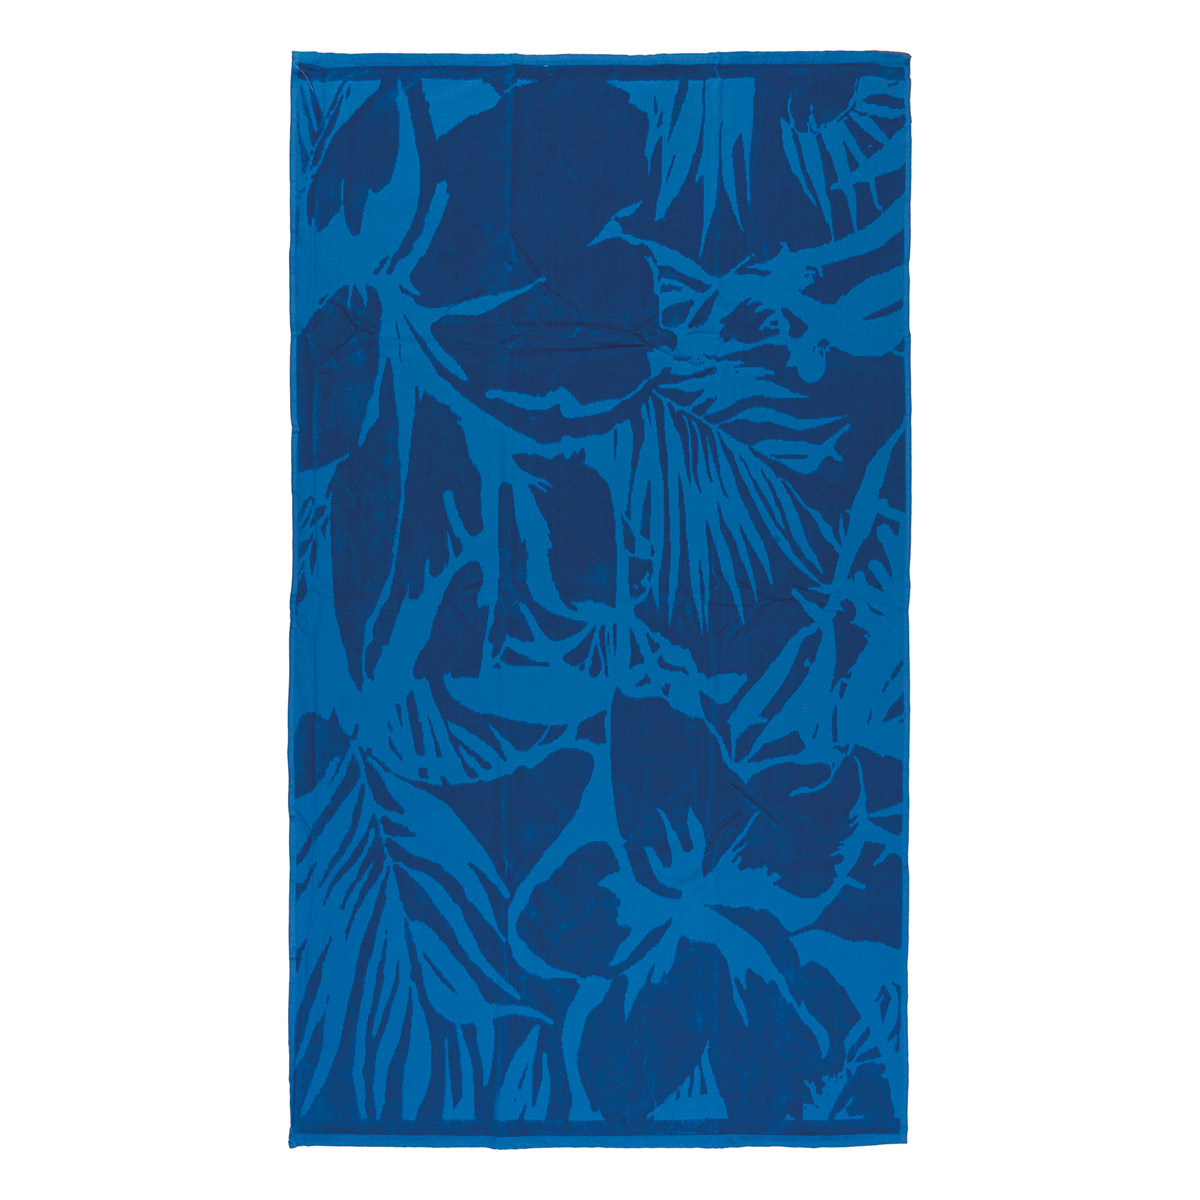 Πετσέτα θαλάσσης Art 2105 86×160 Μπλε Beauty Home